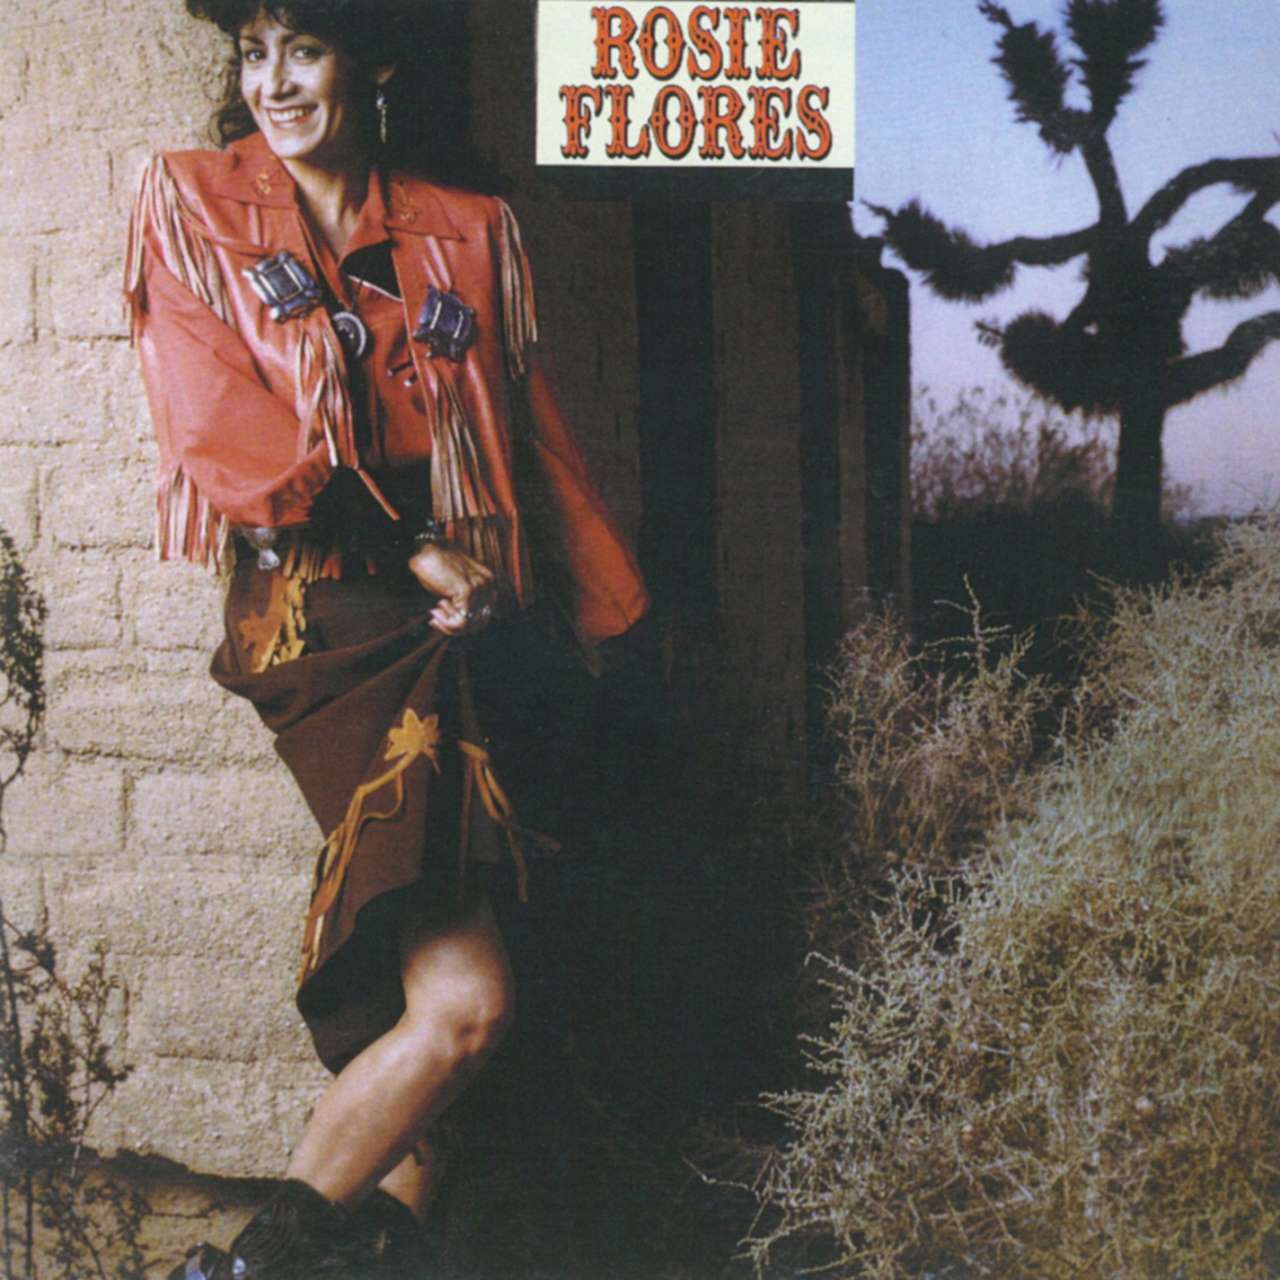 Rosie Flores - Rosie Flores cover album